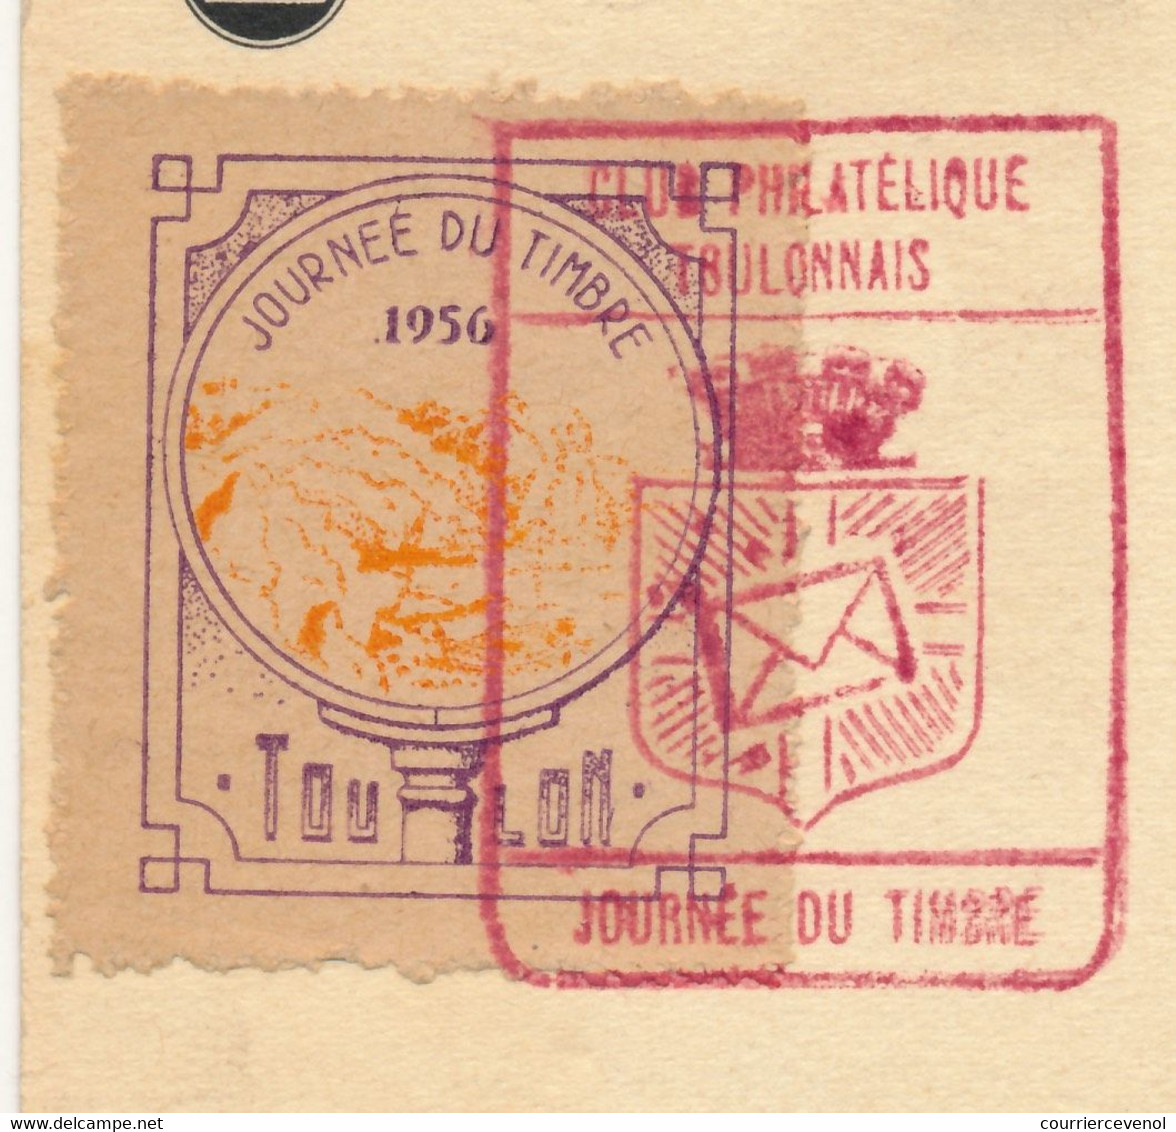 FRANCE => Vignette "Journée Du Timbre 1956 TOULON" Sur Carte Fédérale 12F + 3F François De Tassis - Toulon 1956 - Briefmarkenmessen